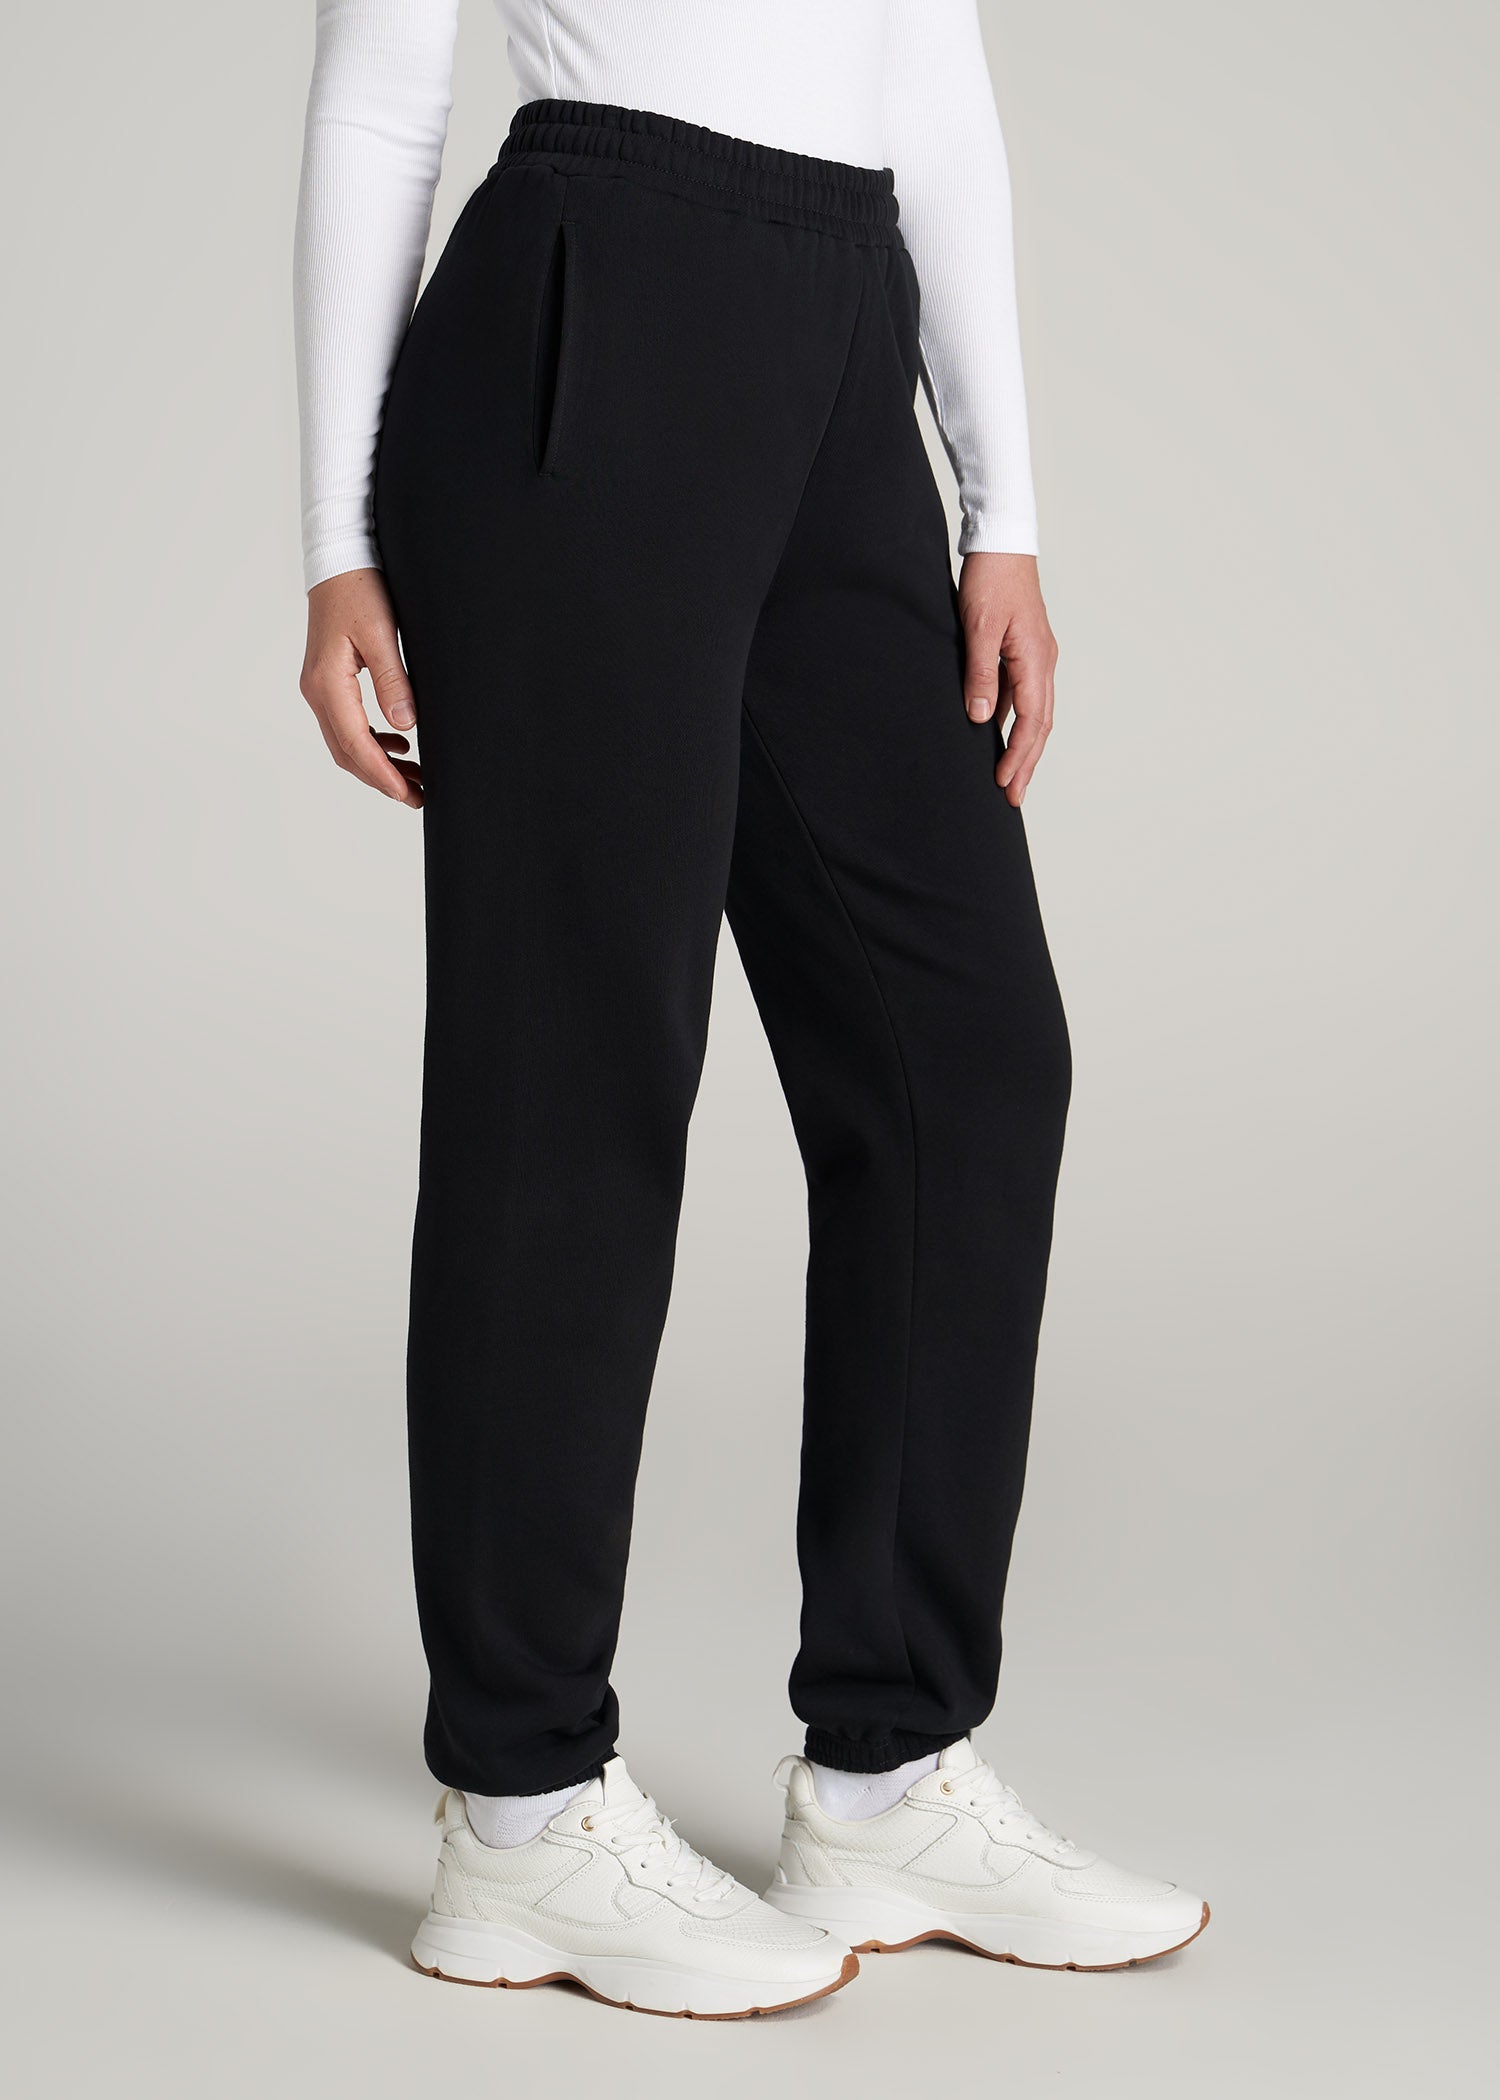    American-Tall-Women-WKND-Fleece-Relaxed-Sweatpants-Black-side